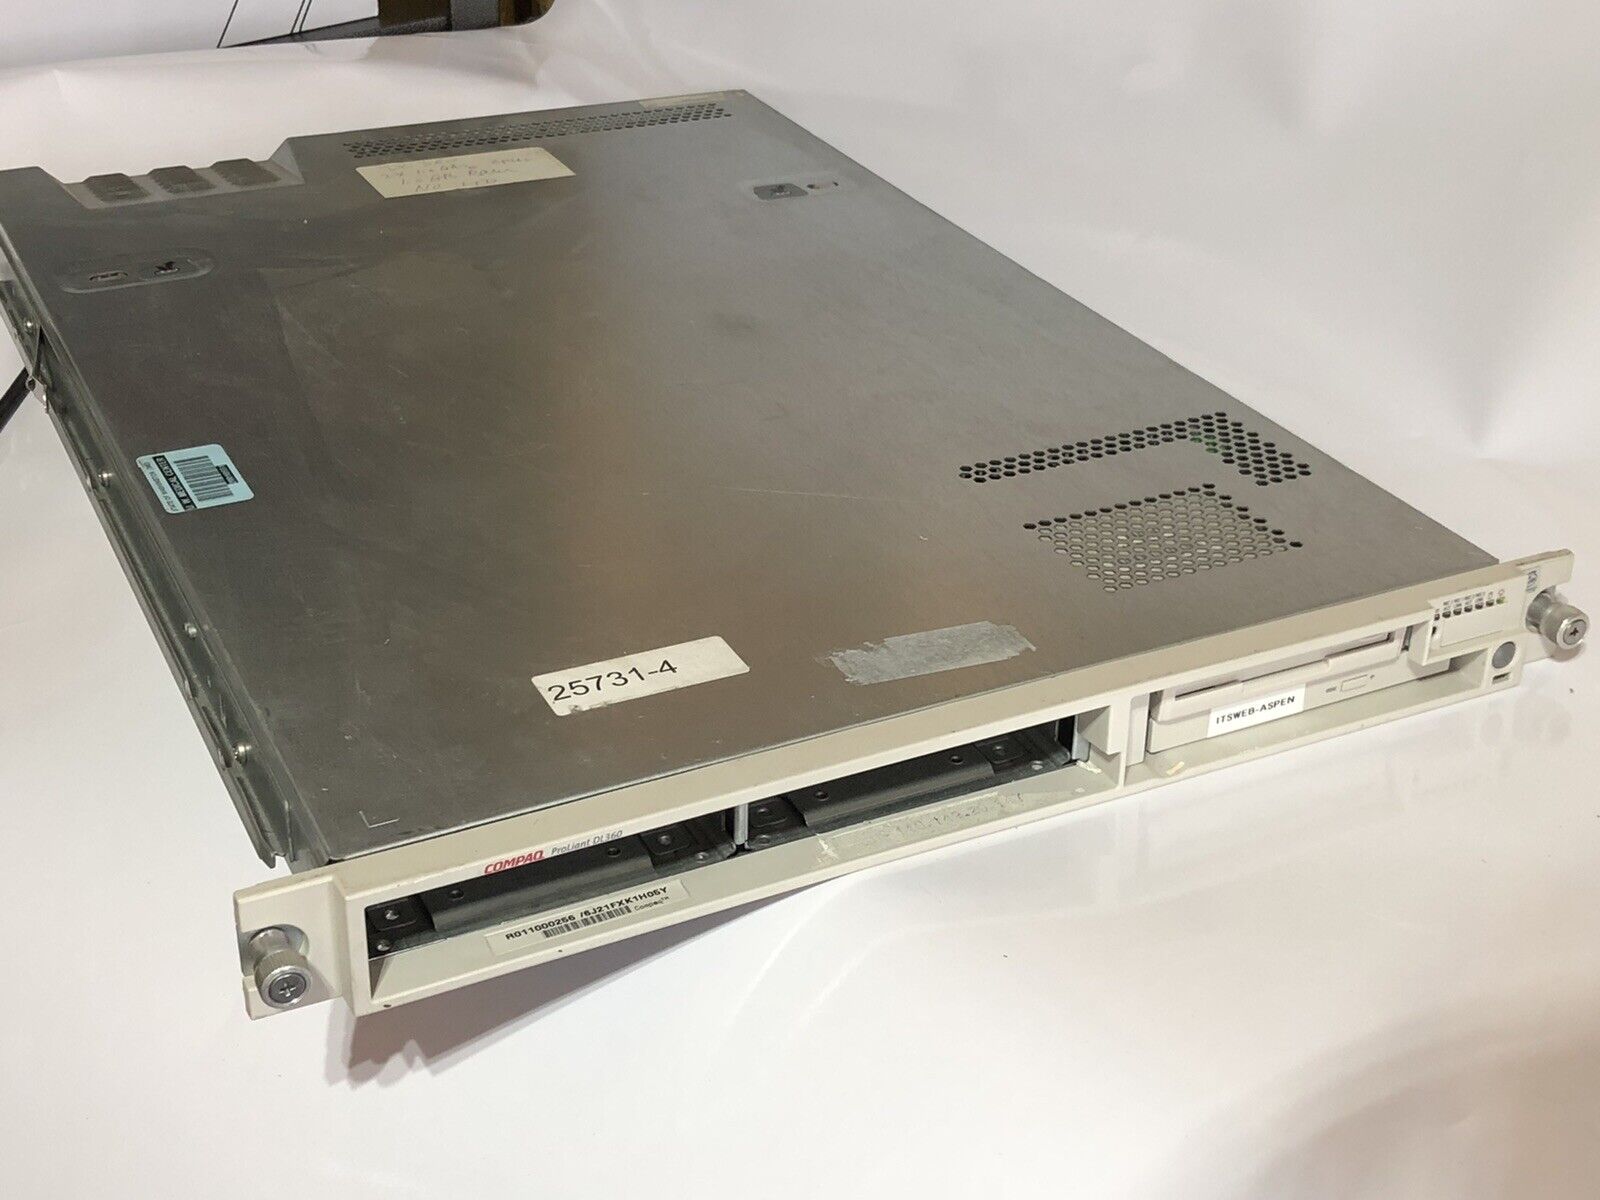 Compaq Proliant DL360 